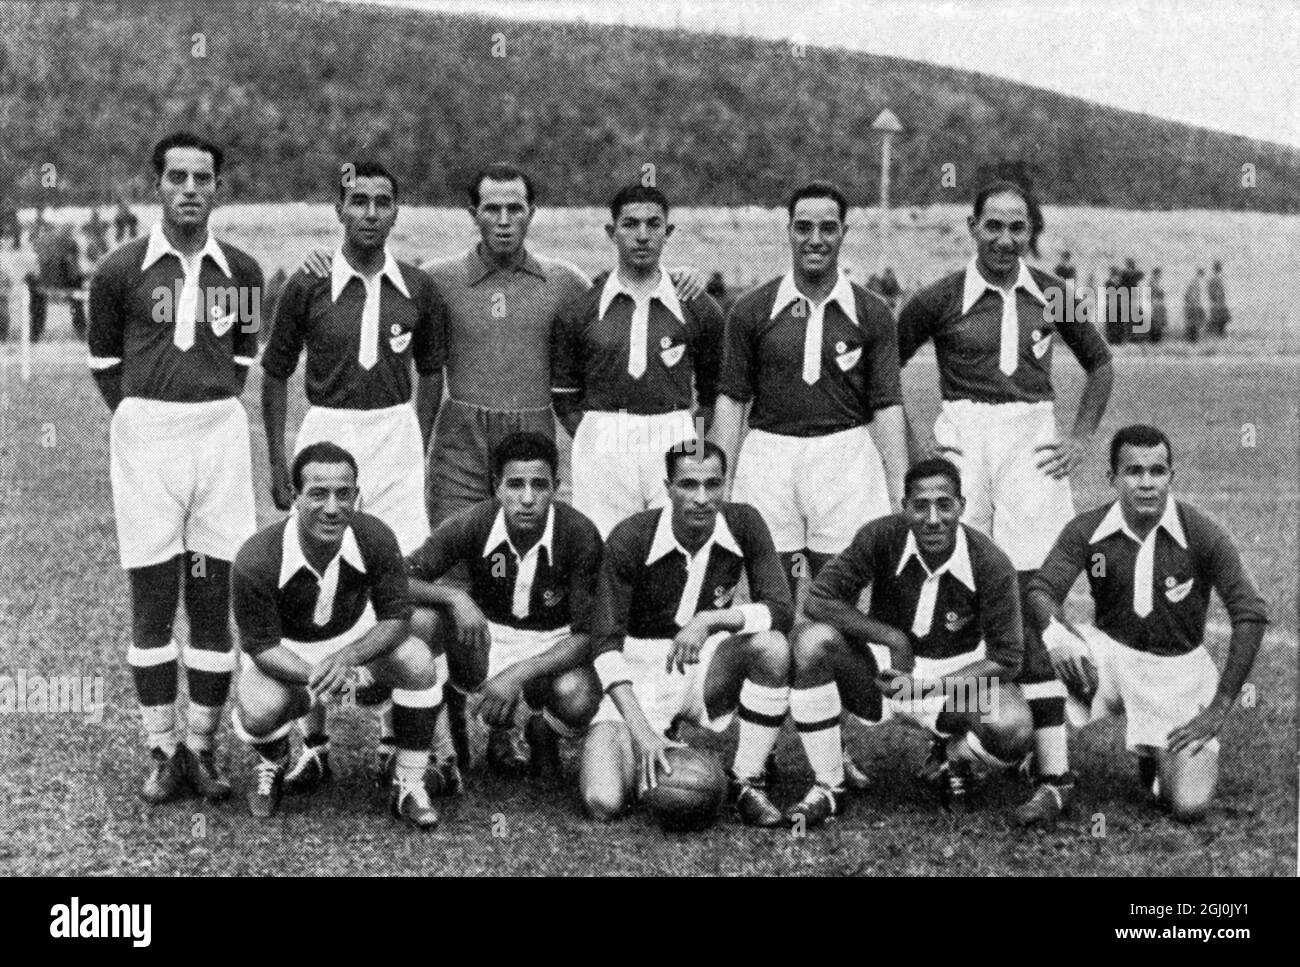 1936 Jeux Olympiques, Berlin - équipes de football du monde entier - Egypte Fussballmannschaften aus aller Welt - Agyptan ©TopFoto Banque D'Images